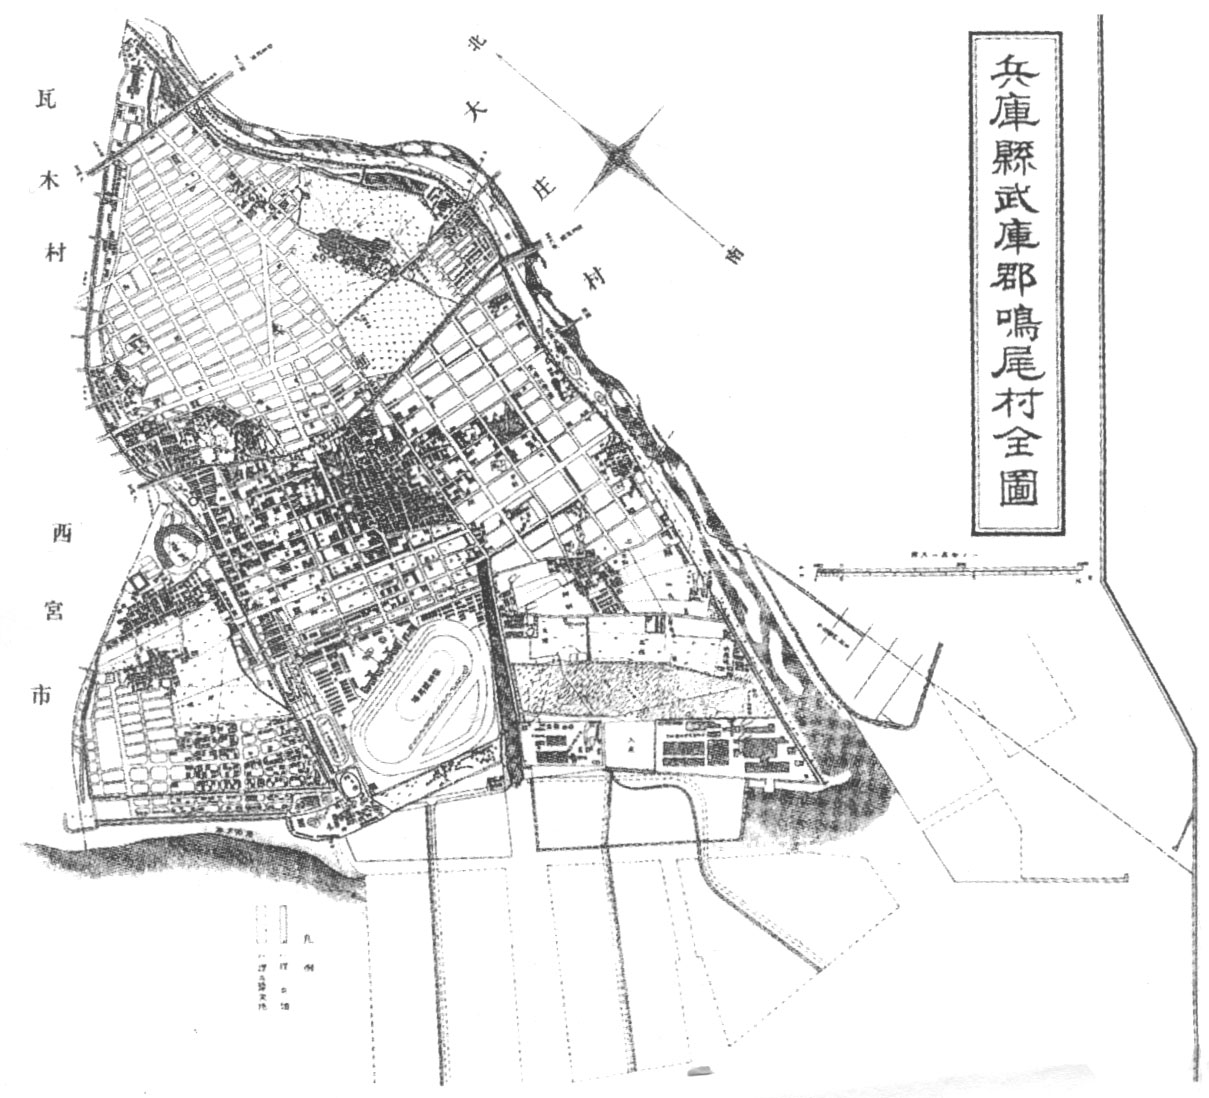 鳴尾村 (兵庫県) - Wikipedia